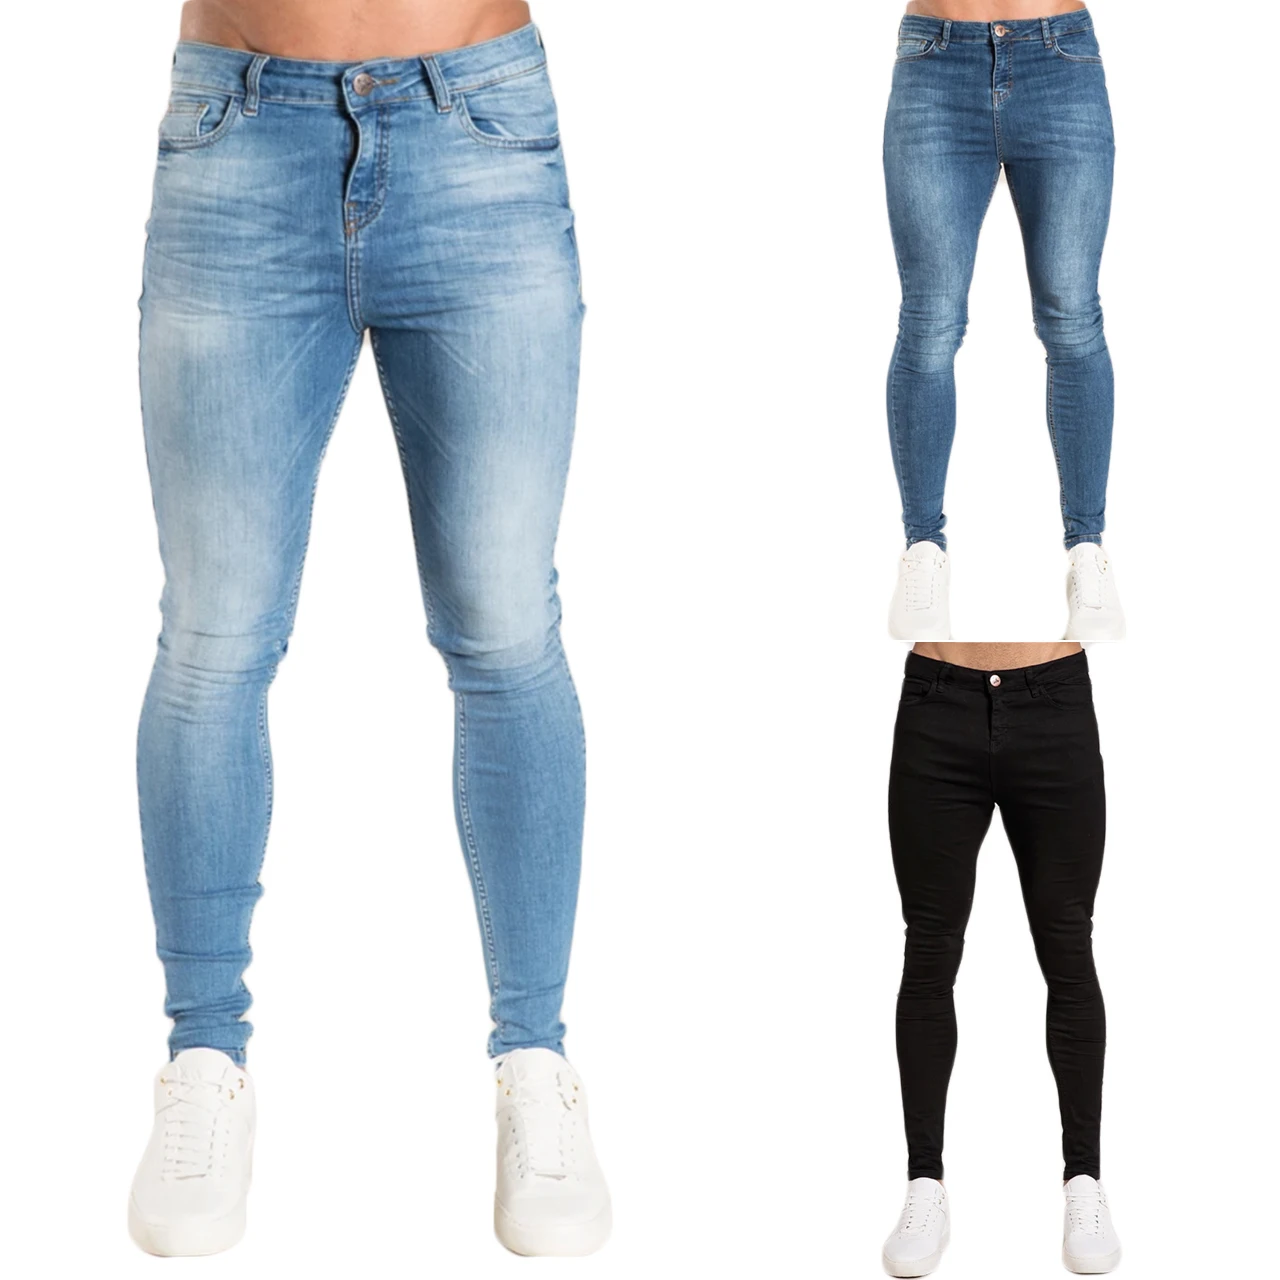 Grosshandel Enge Jeans Manner Kaufen Sie Die Besten Enge Jeans Manner Stucke Aus China Enge Jeans Manner Grossisten Online Alibaba Com